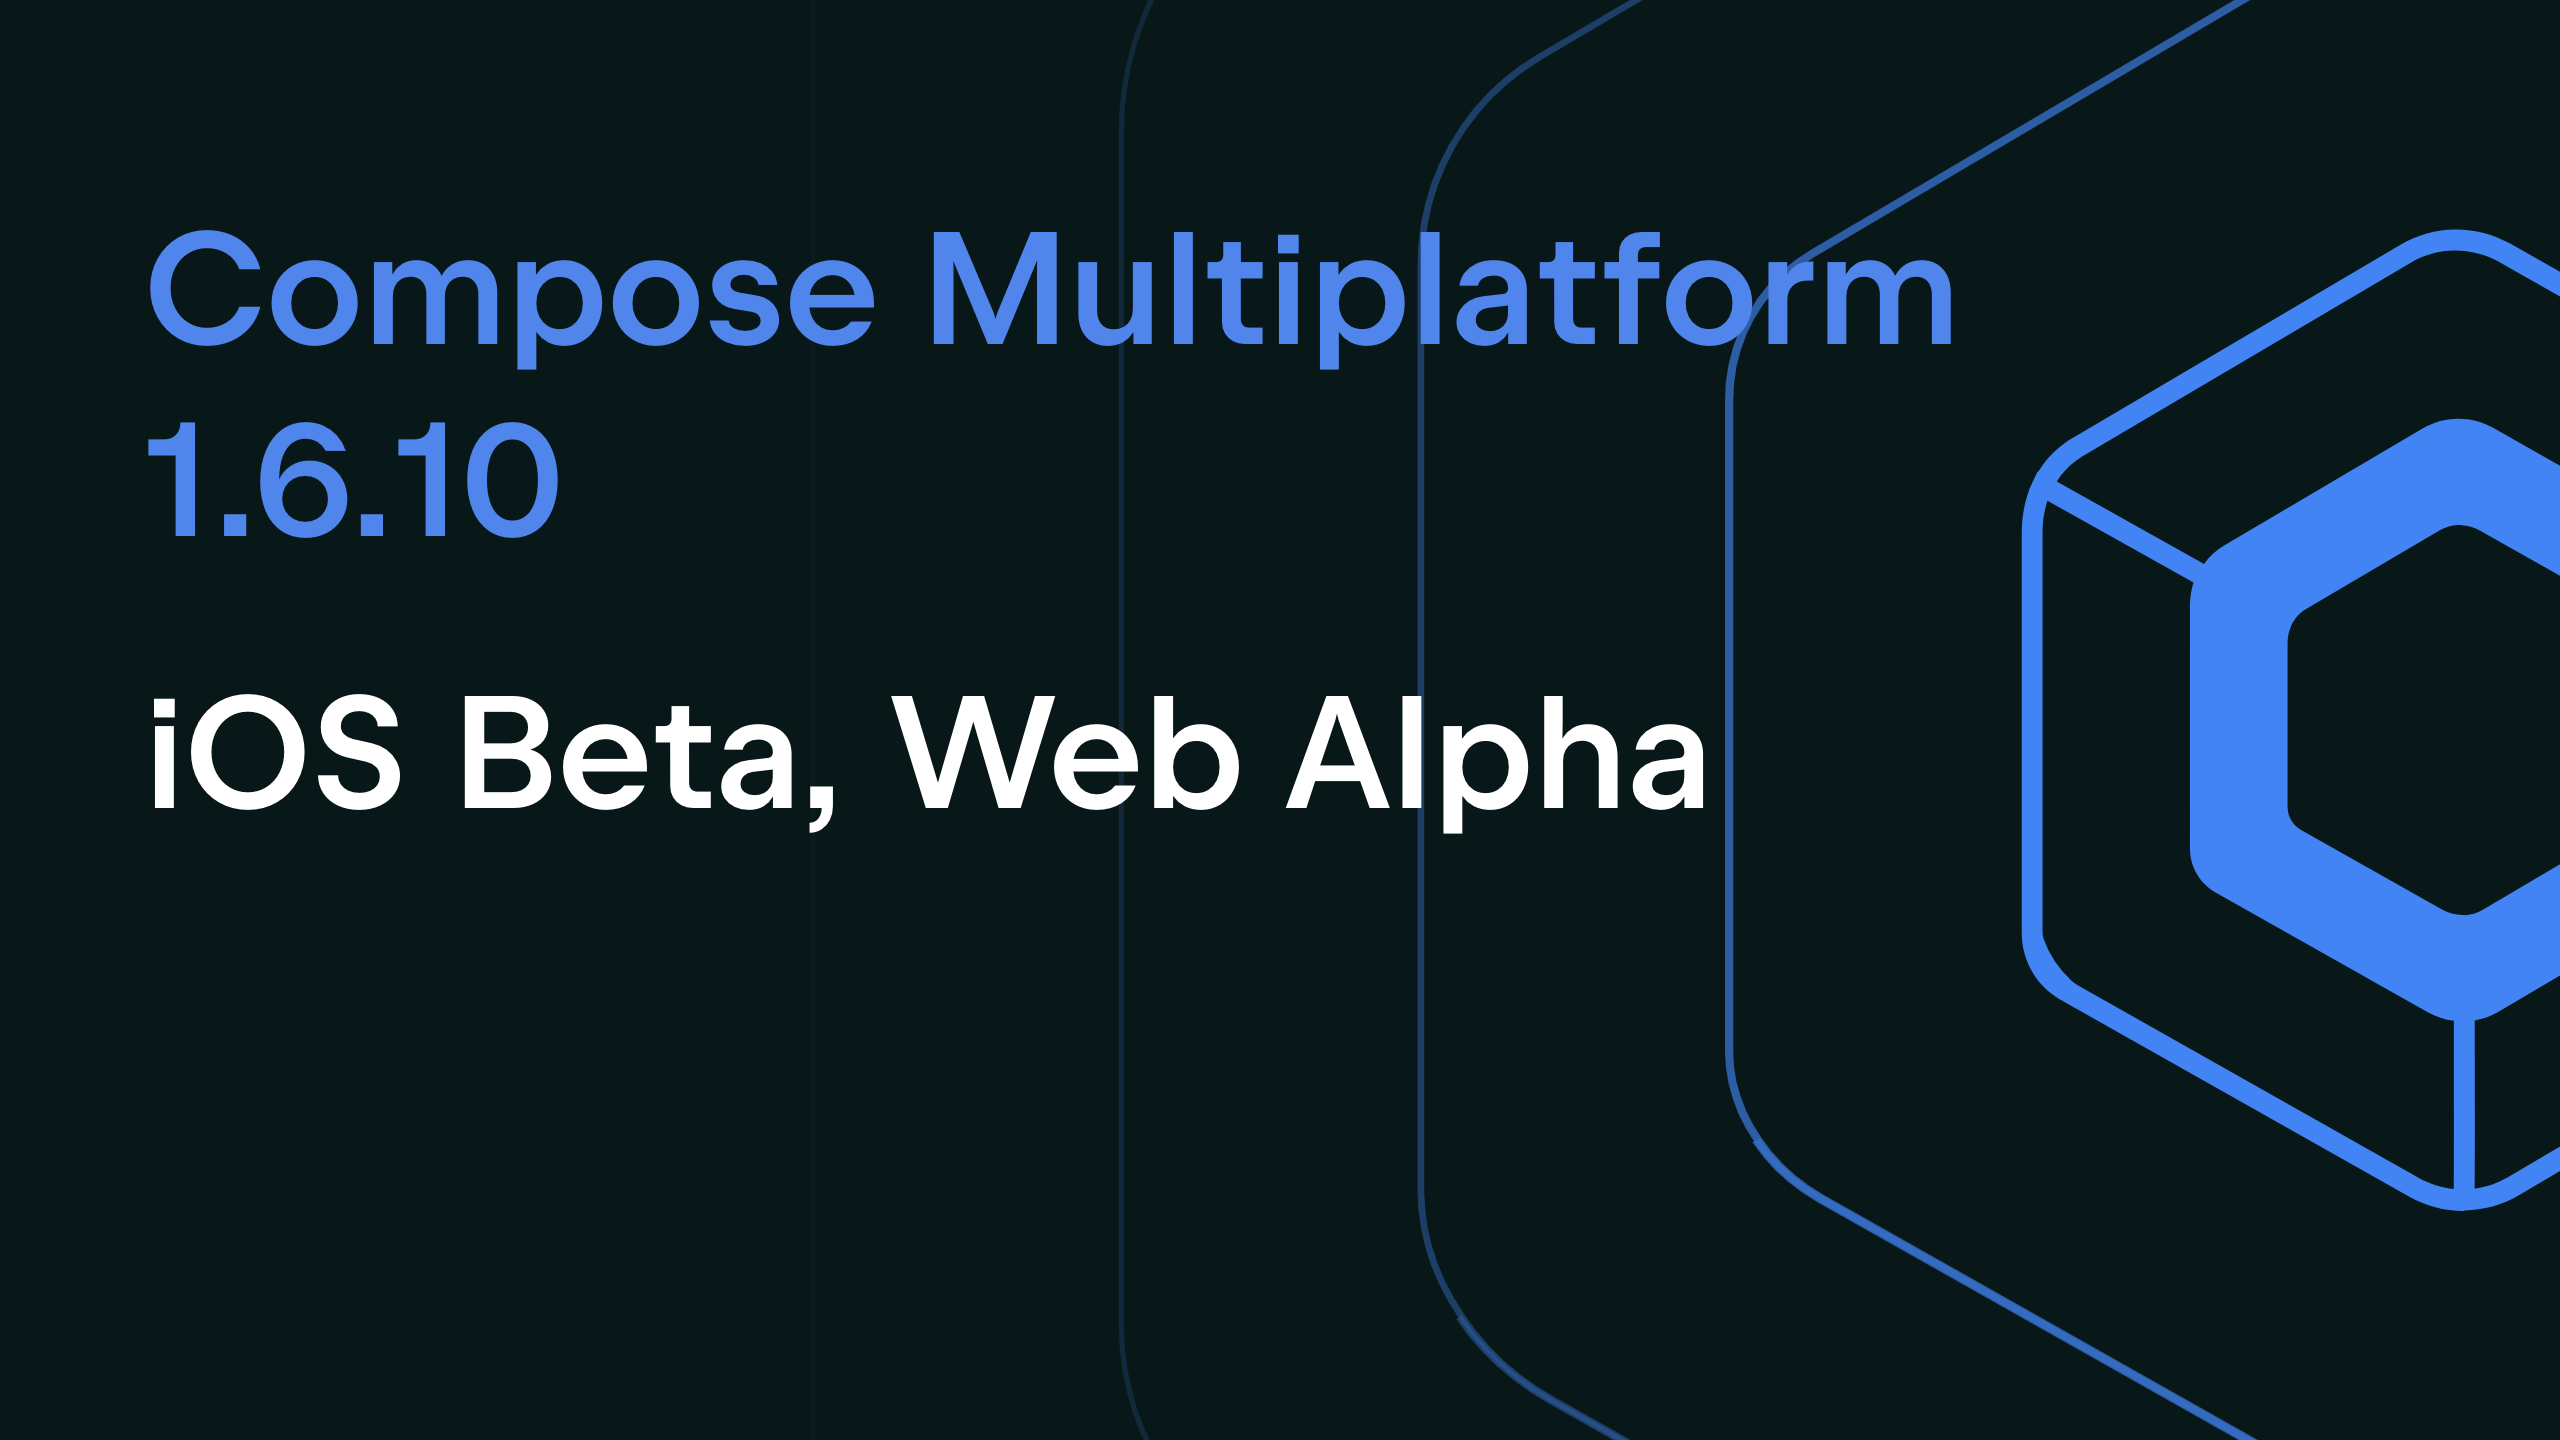 Compose Multiplatform 1.6.10: iOS Beta, Web Alpha